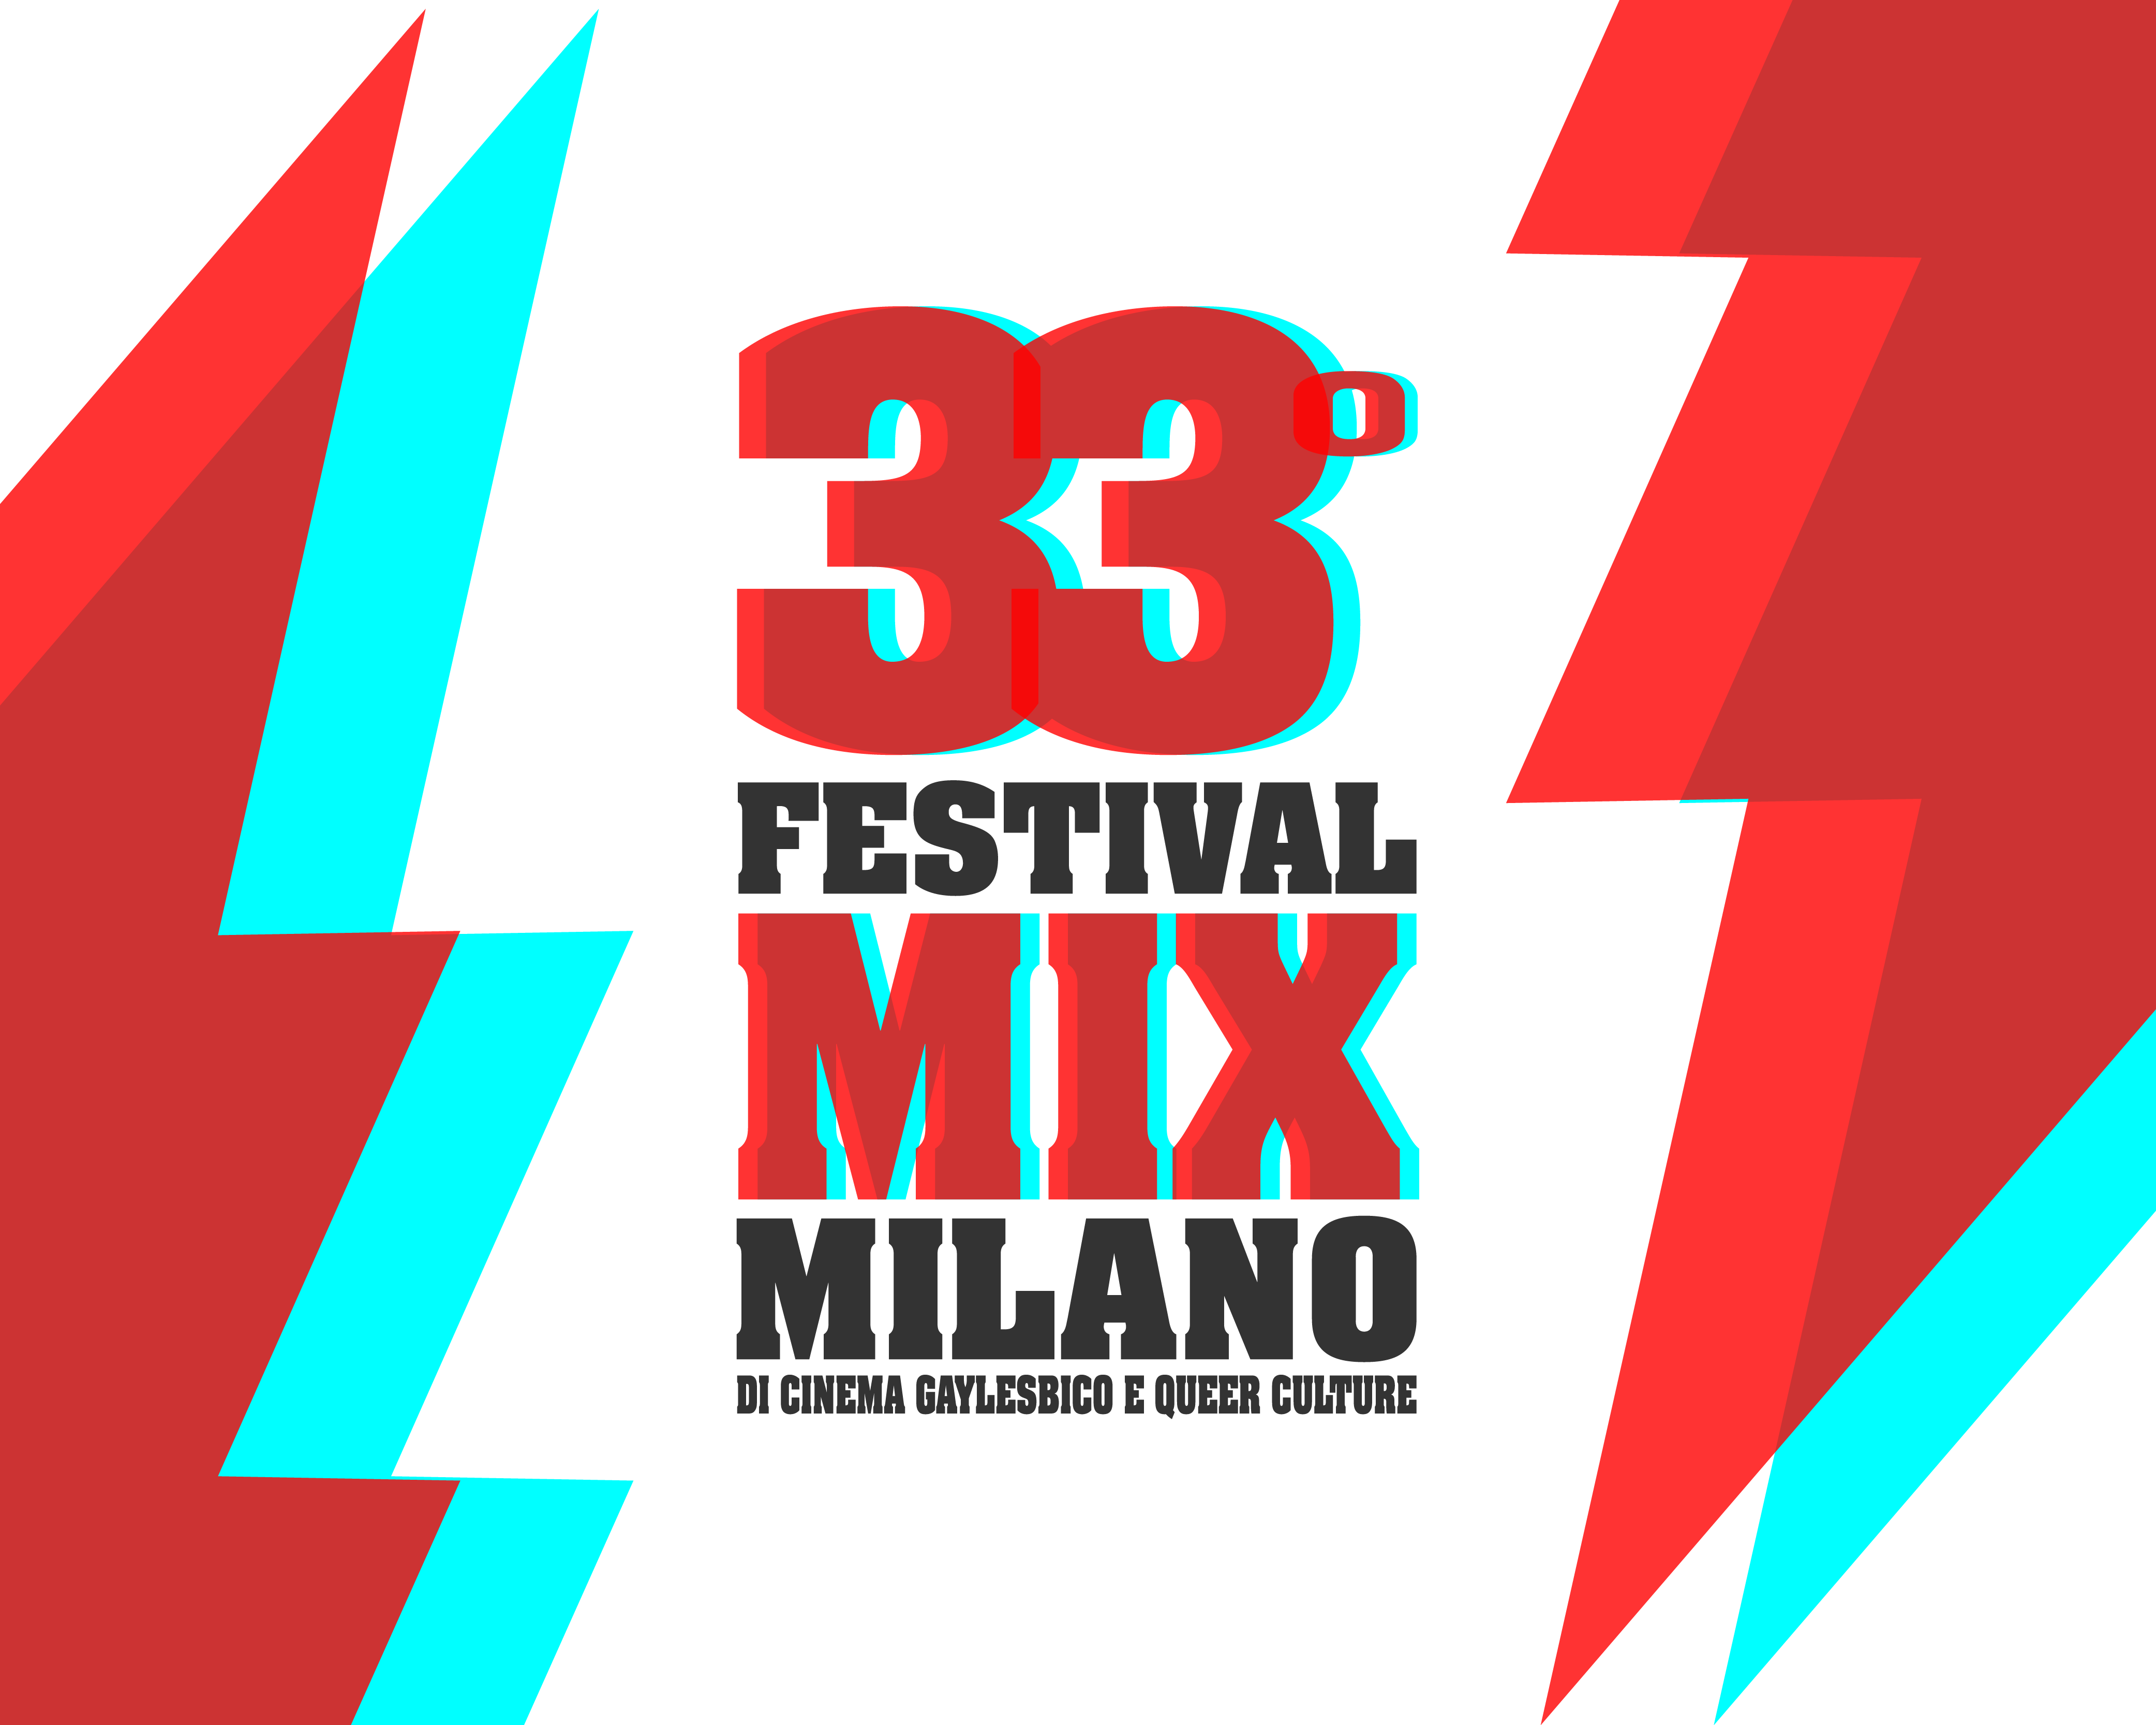 33° Festival MIX Milano